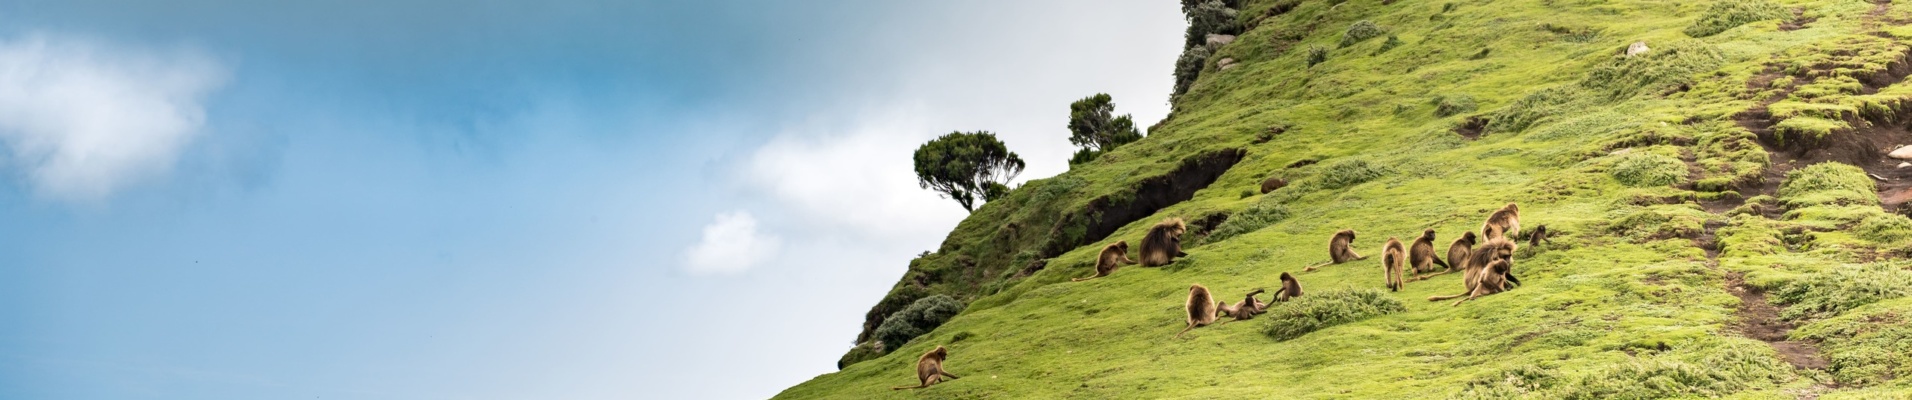 Babouins dans les montagnes du Simien en Ethiopie